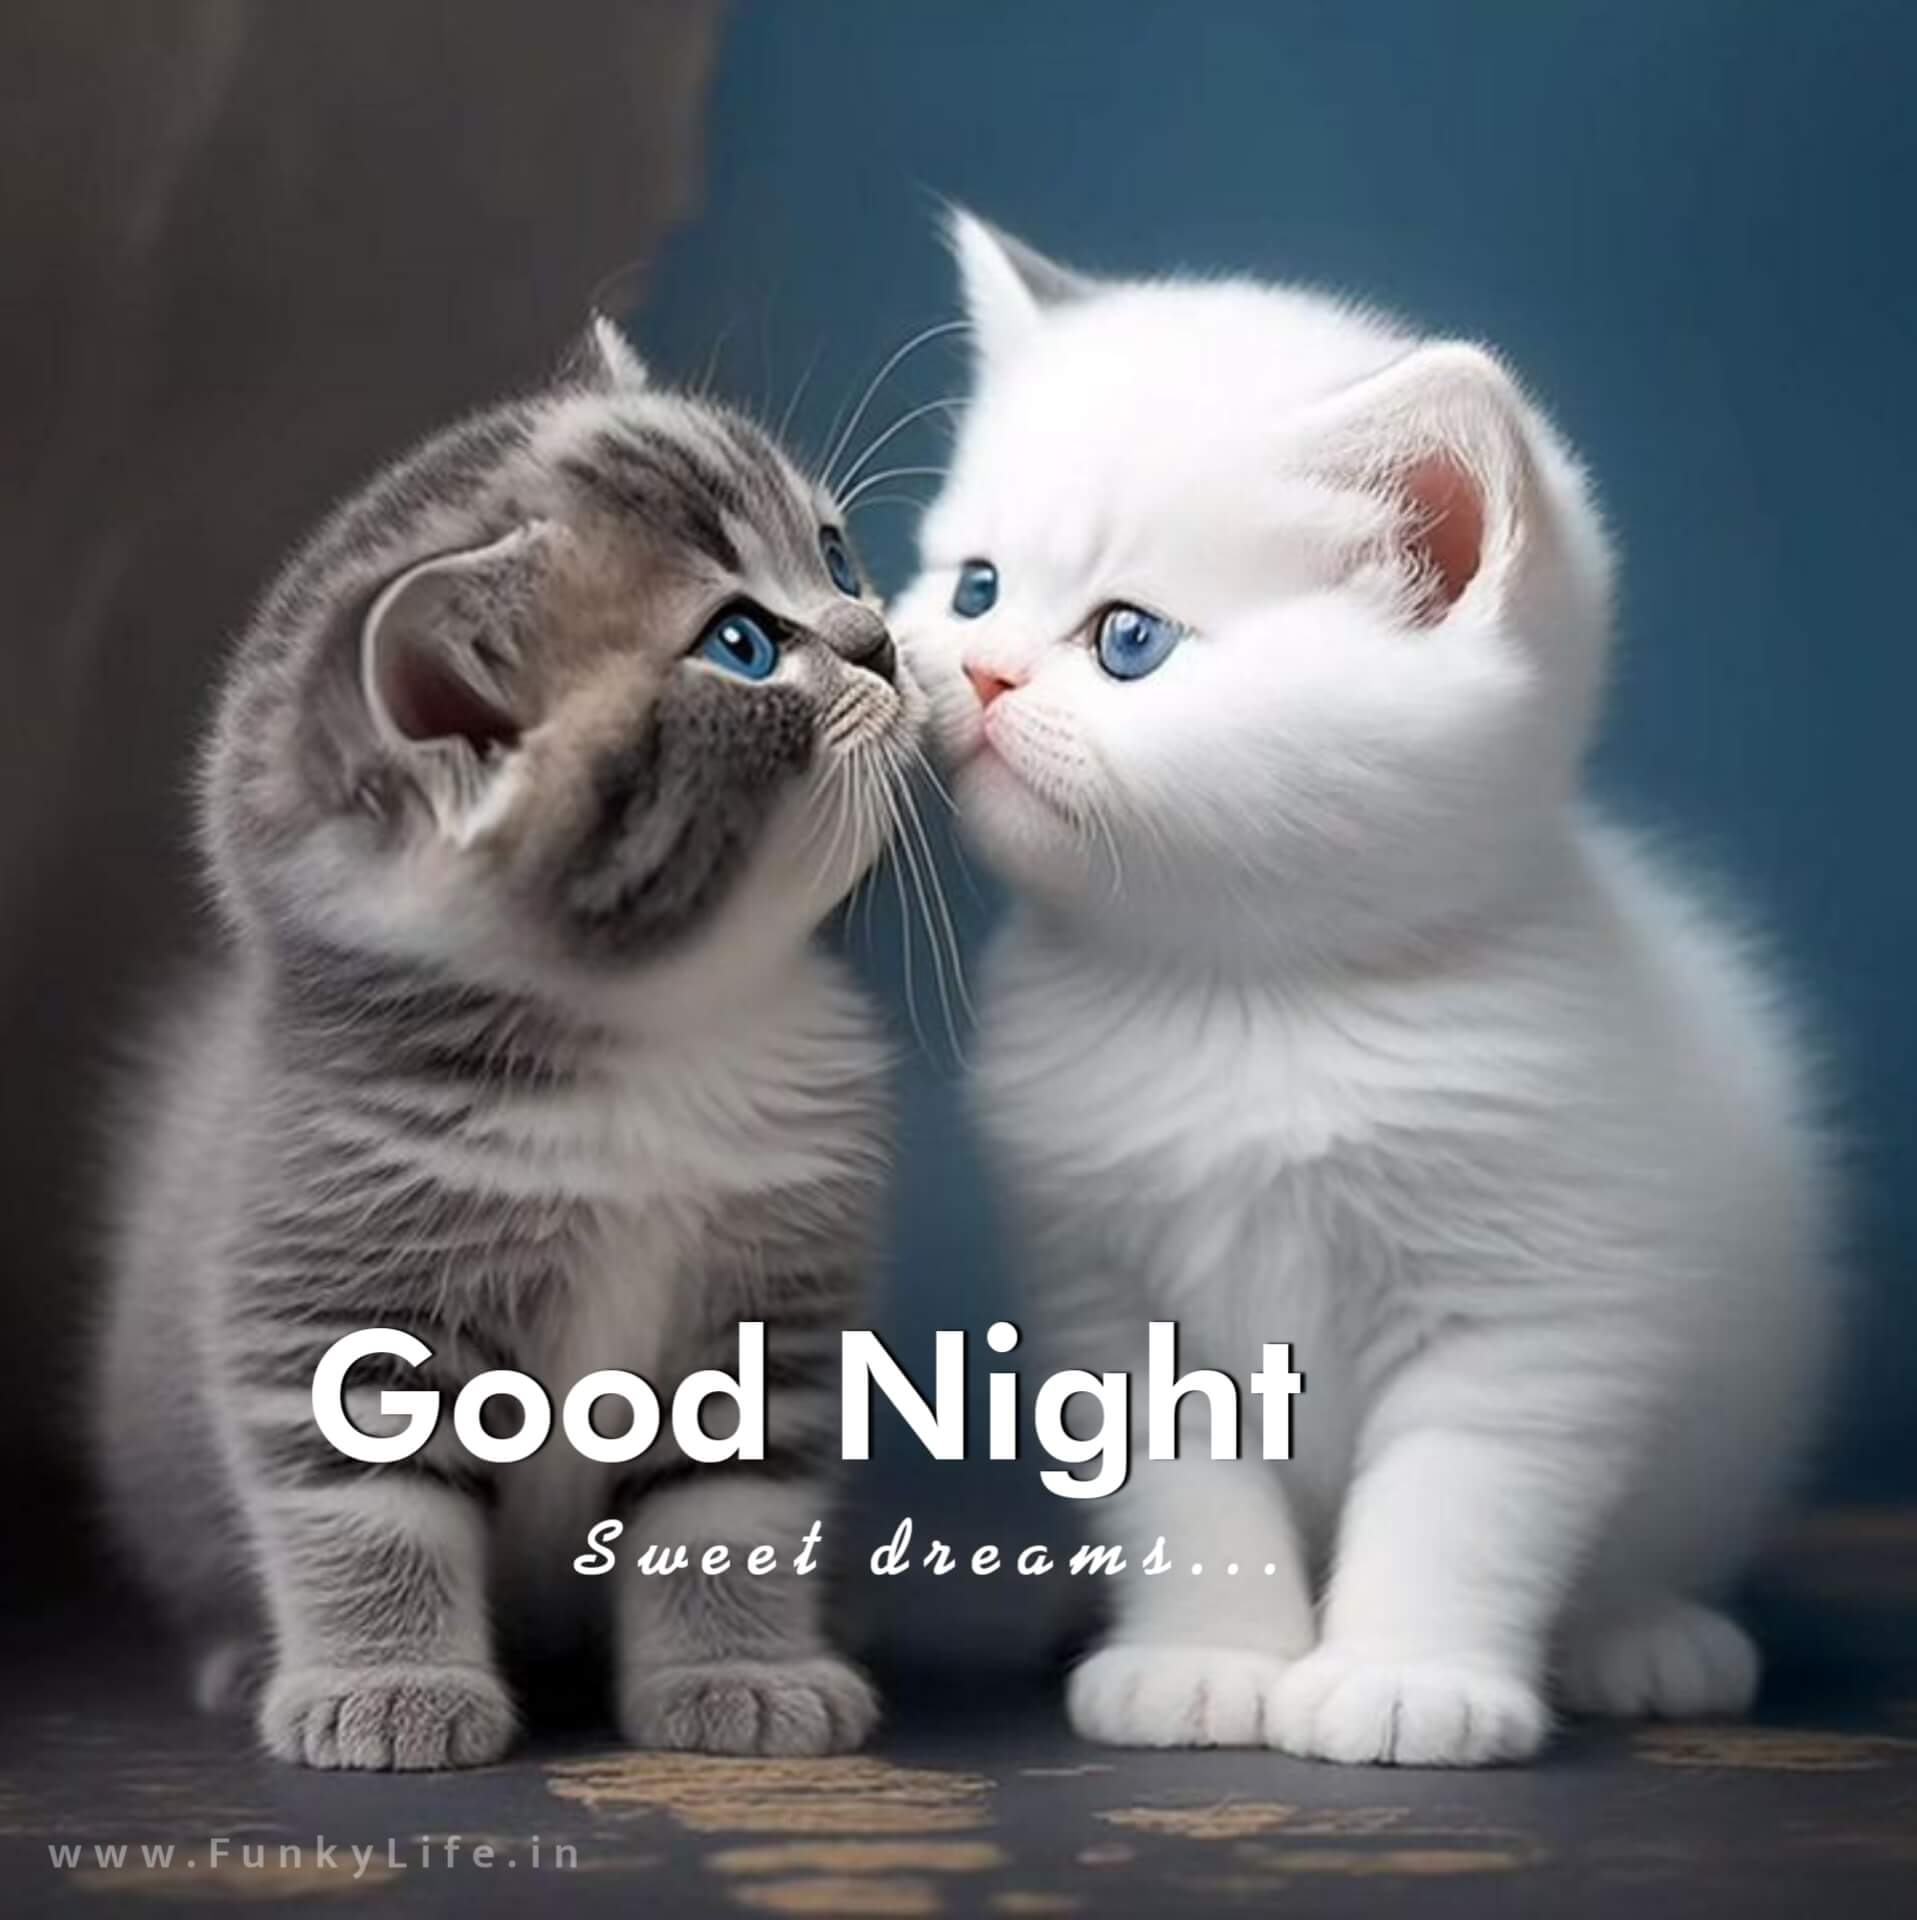 Cute Kitten Good Night Image